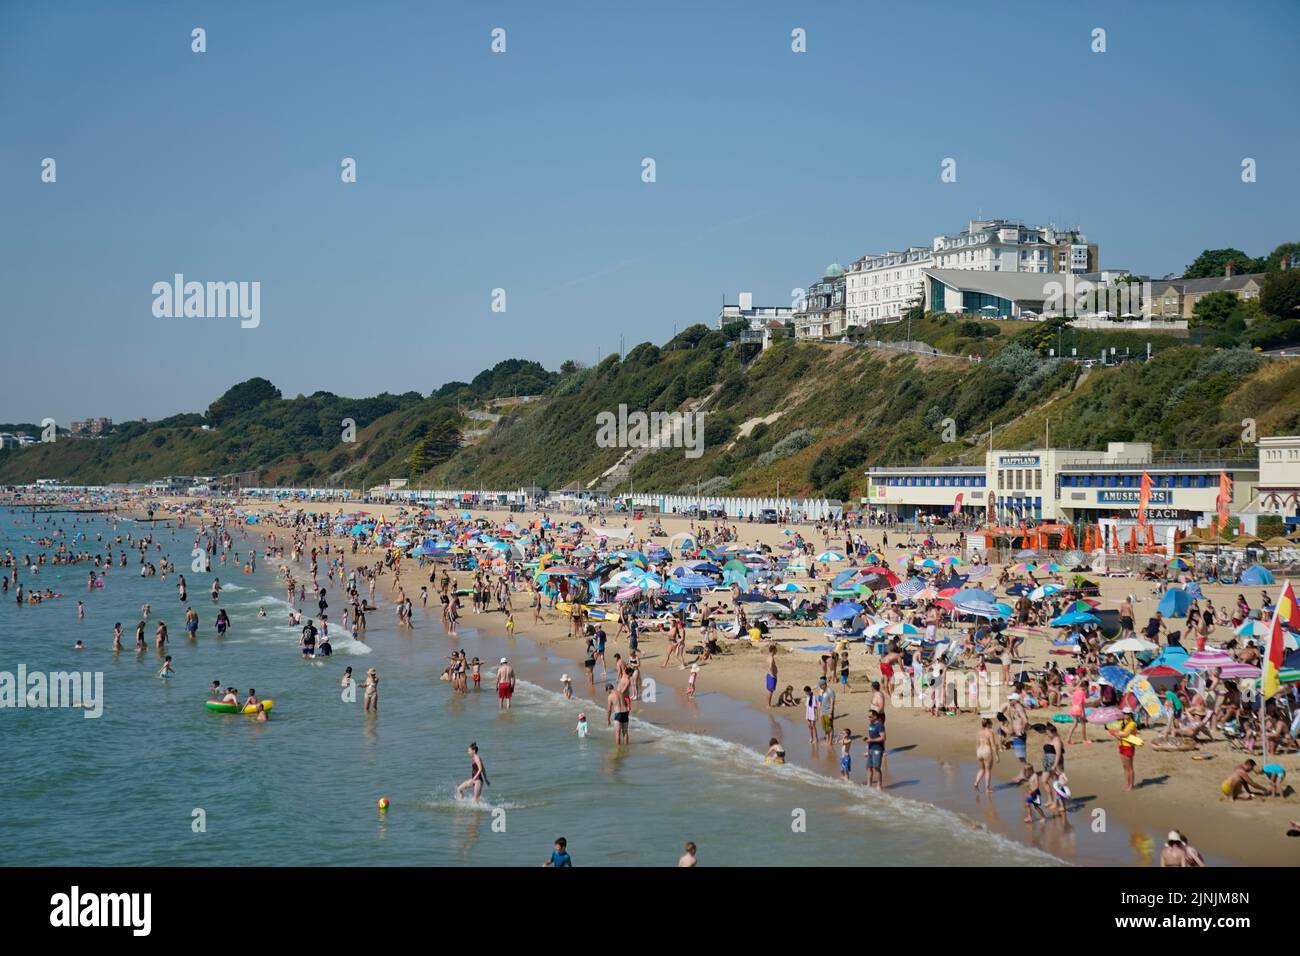 La gente disfruta del calor en la playa de Bournemouth, Dorset. Está previsto que se declare una sequía en algunas partes de Inglaterra el viernes, con temperaturas que alcanzarán los 35C grados, lo que hace que el país sea más caliente que algunas partes del Caribe. Fecha de la foto: Viernes 12 de agosto de 2022. Foto de stock